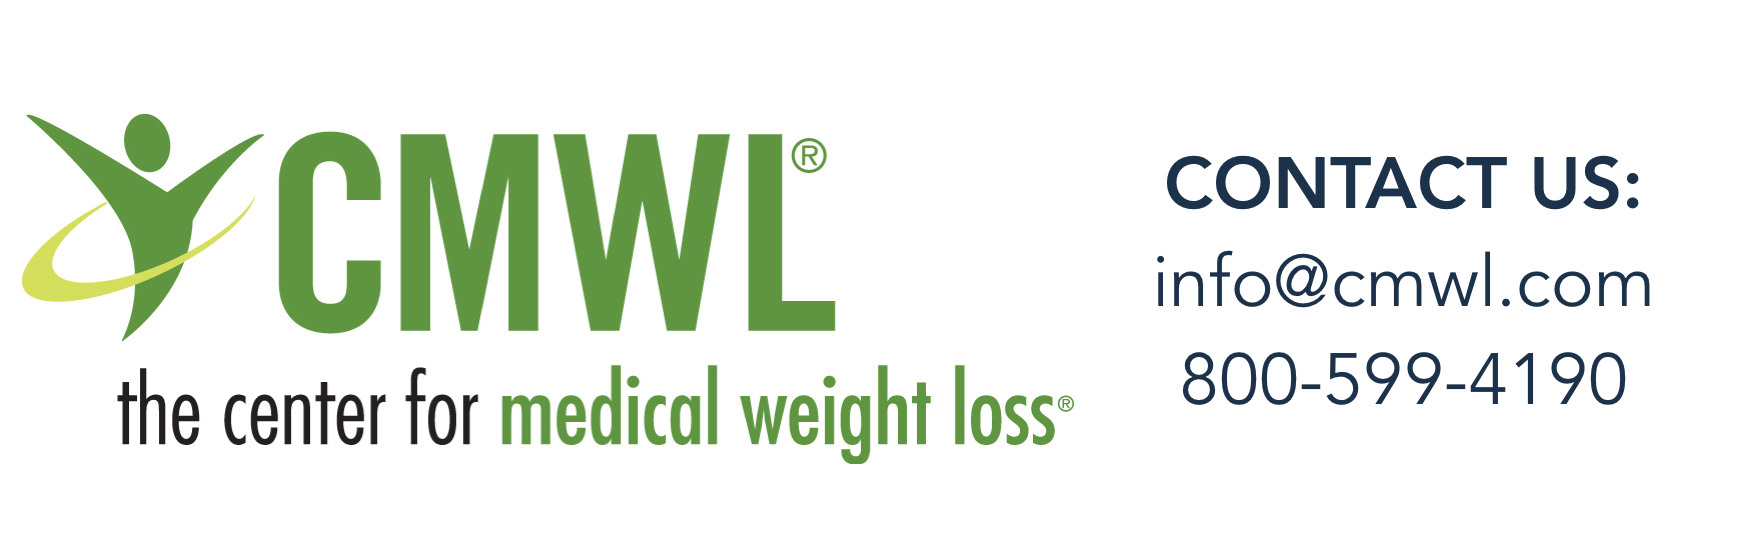 CMWL Logo and contact